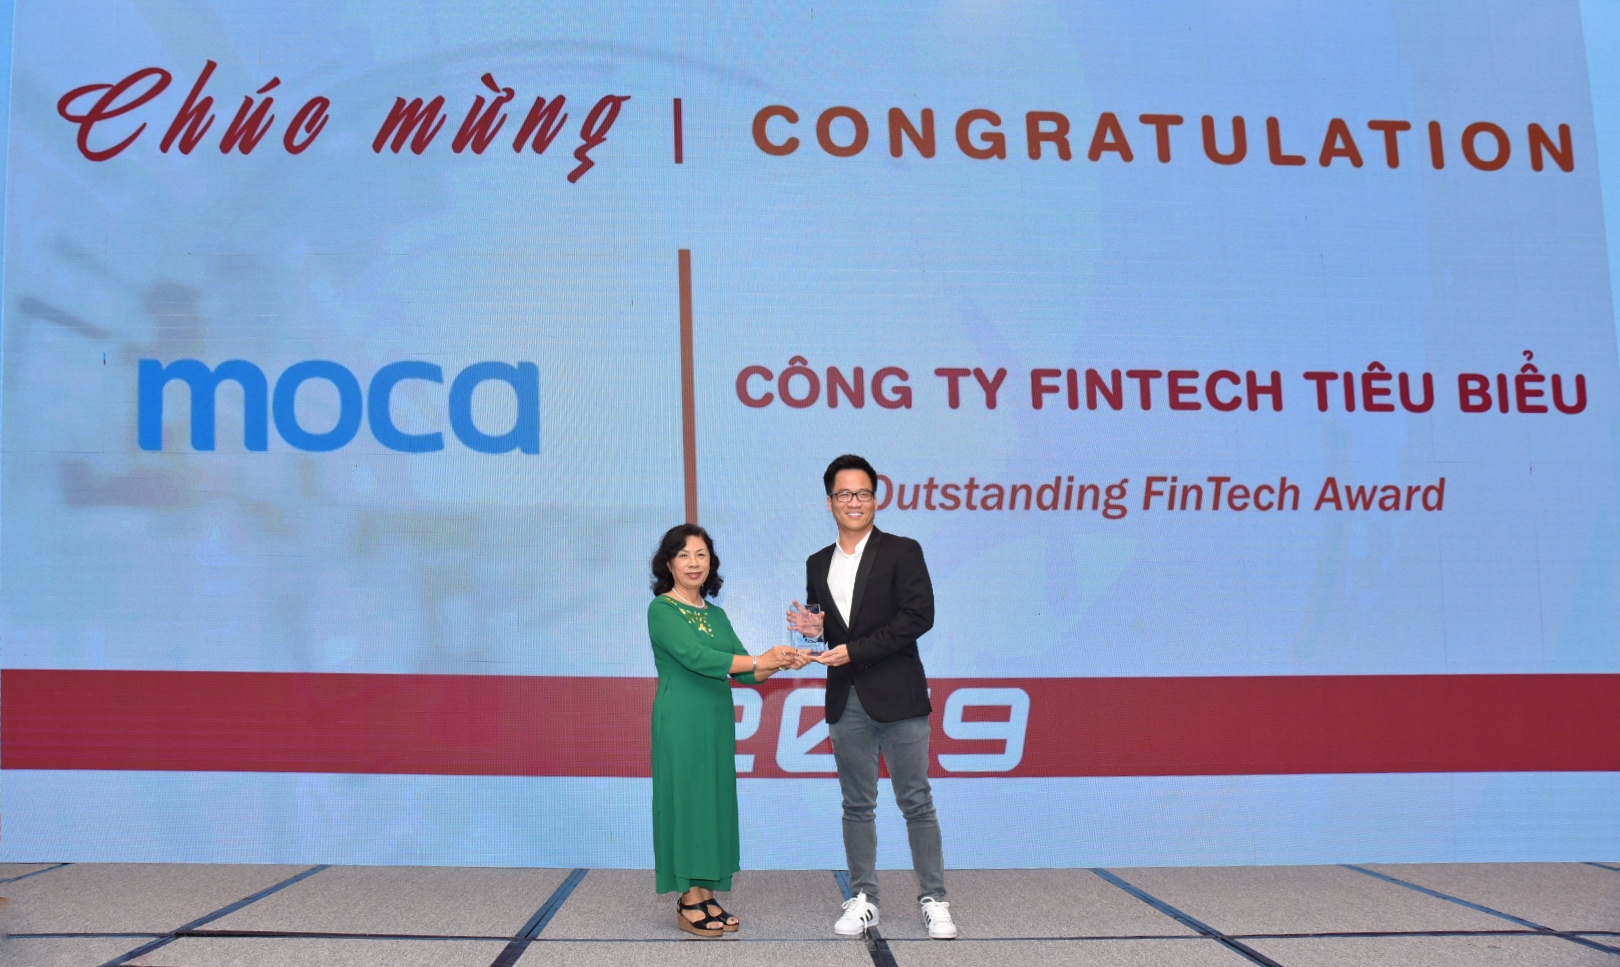 Moca lần thứ ba liên tiếp được vinh danh là Công ty Fintech tiêu biểu